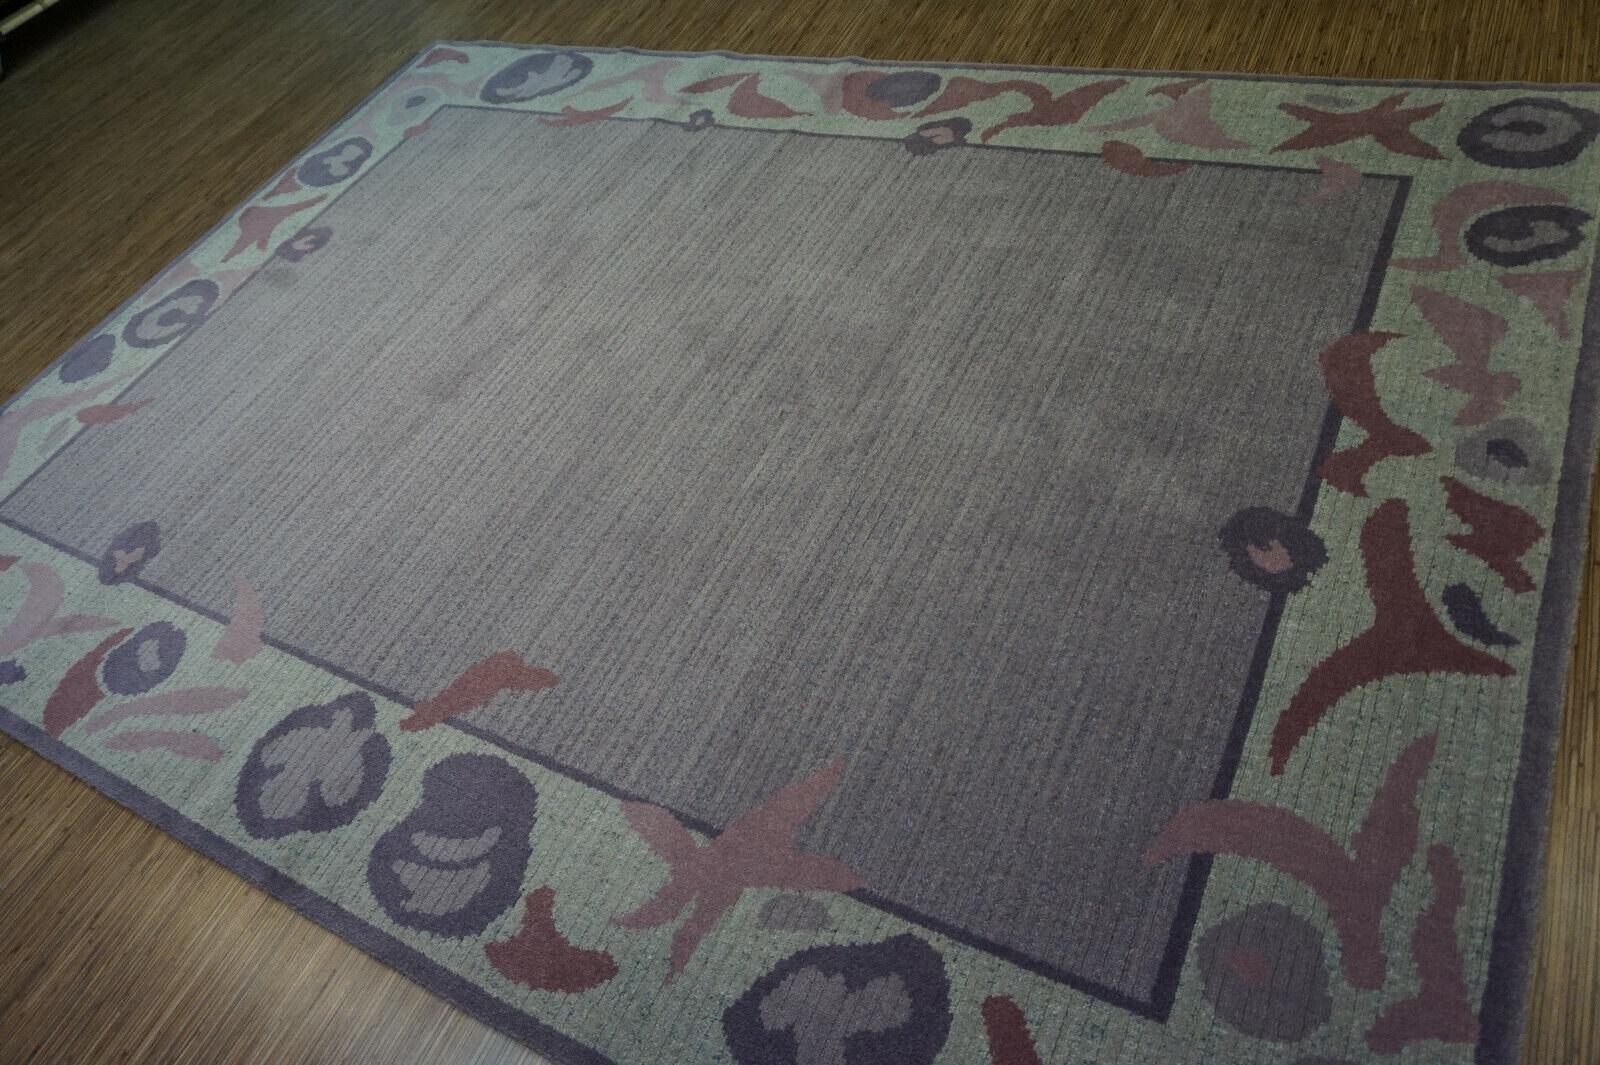 Vintage I.I.C. Tapis géométrique violet de Hollande

Ce tapis géométrique hollandais vintage violet A.I.C. est une pièce de décoration étonnante qui ajoutera une touche de couleur et de style à votre intérieur. Fabriqué en Hollande dans les années